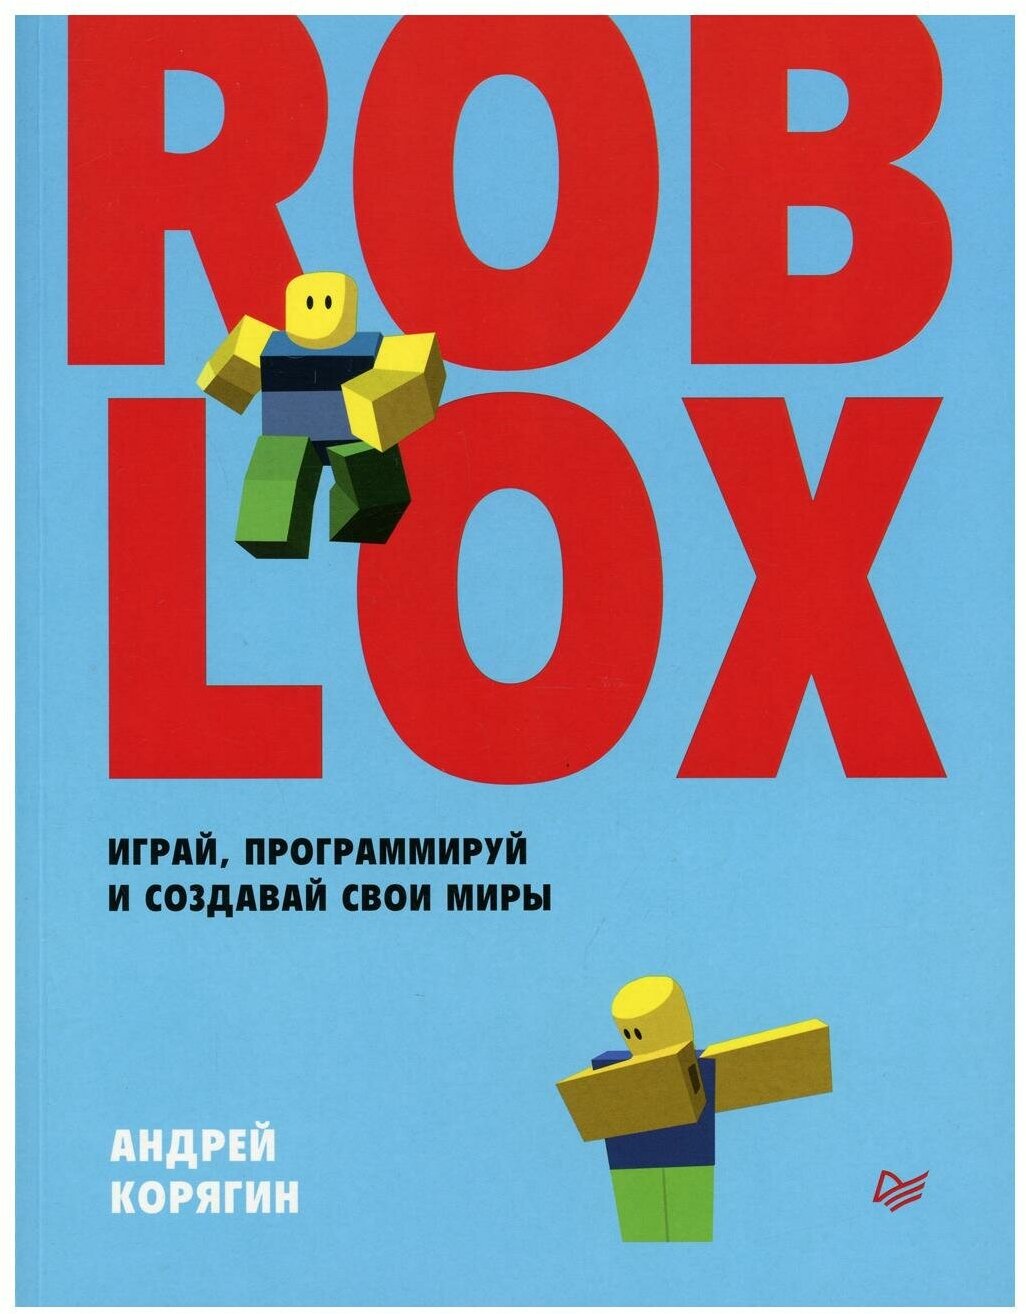 Roblox: играй, программируй и создавай свои миры